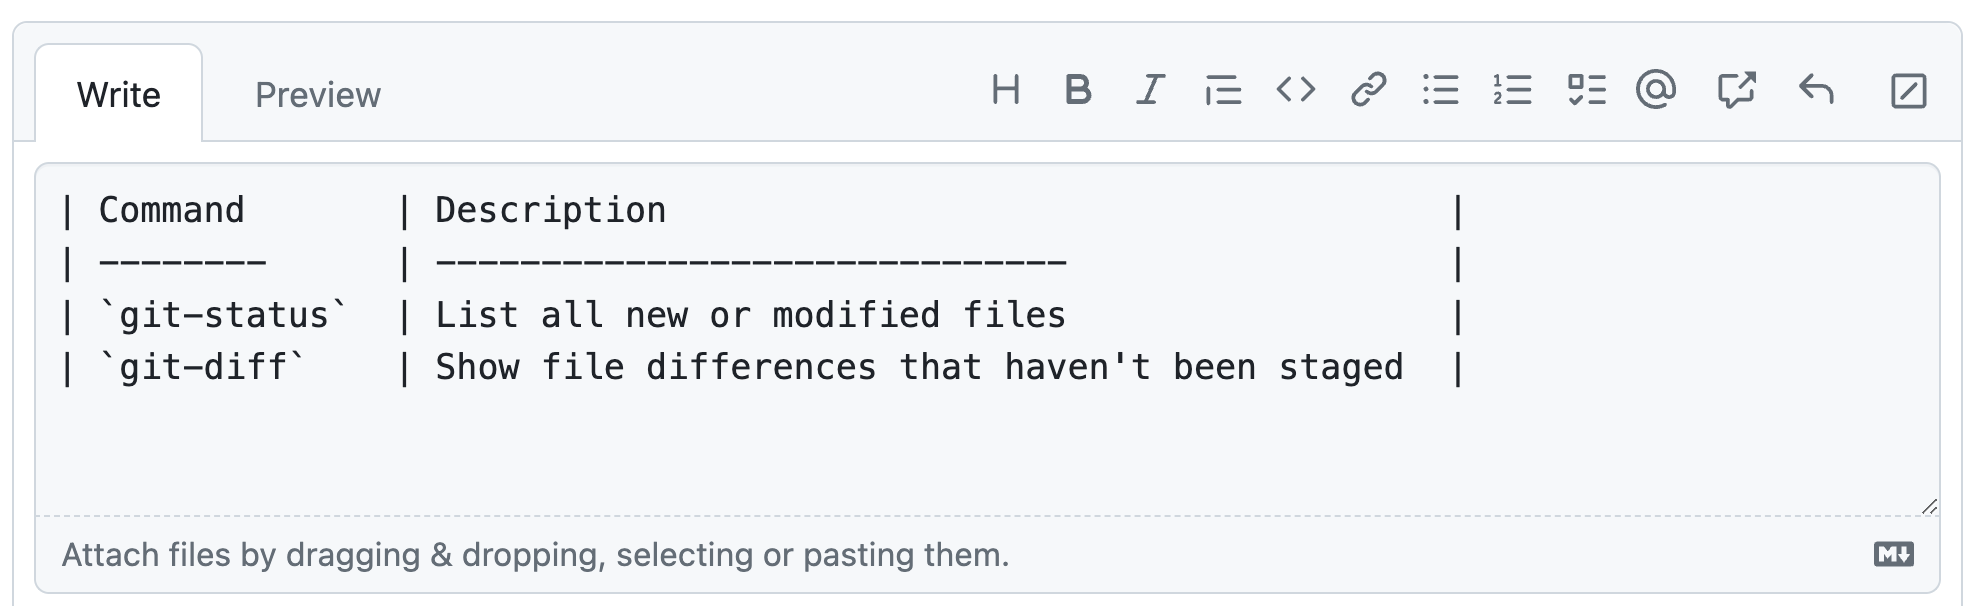 Capture d'écran d'un commentaire GitHub montrant un exemple de table Markdown répertoriant deux commandes Git. Toutes les lettres du tableau ont la même largeur visuelle.